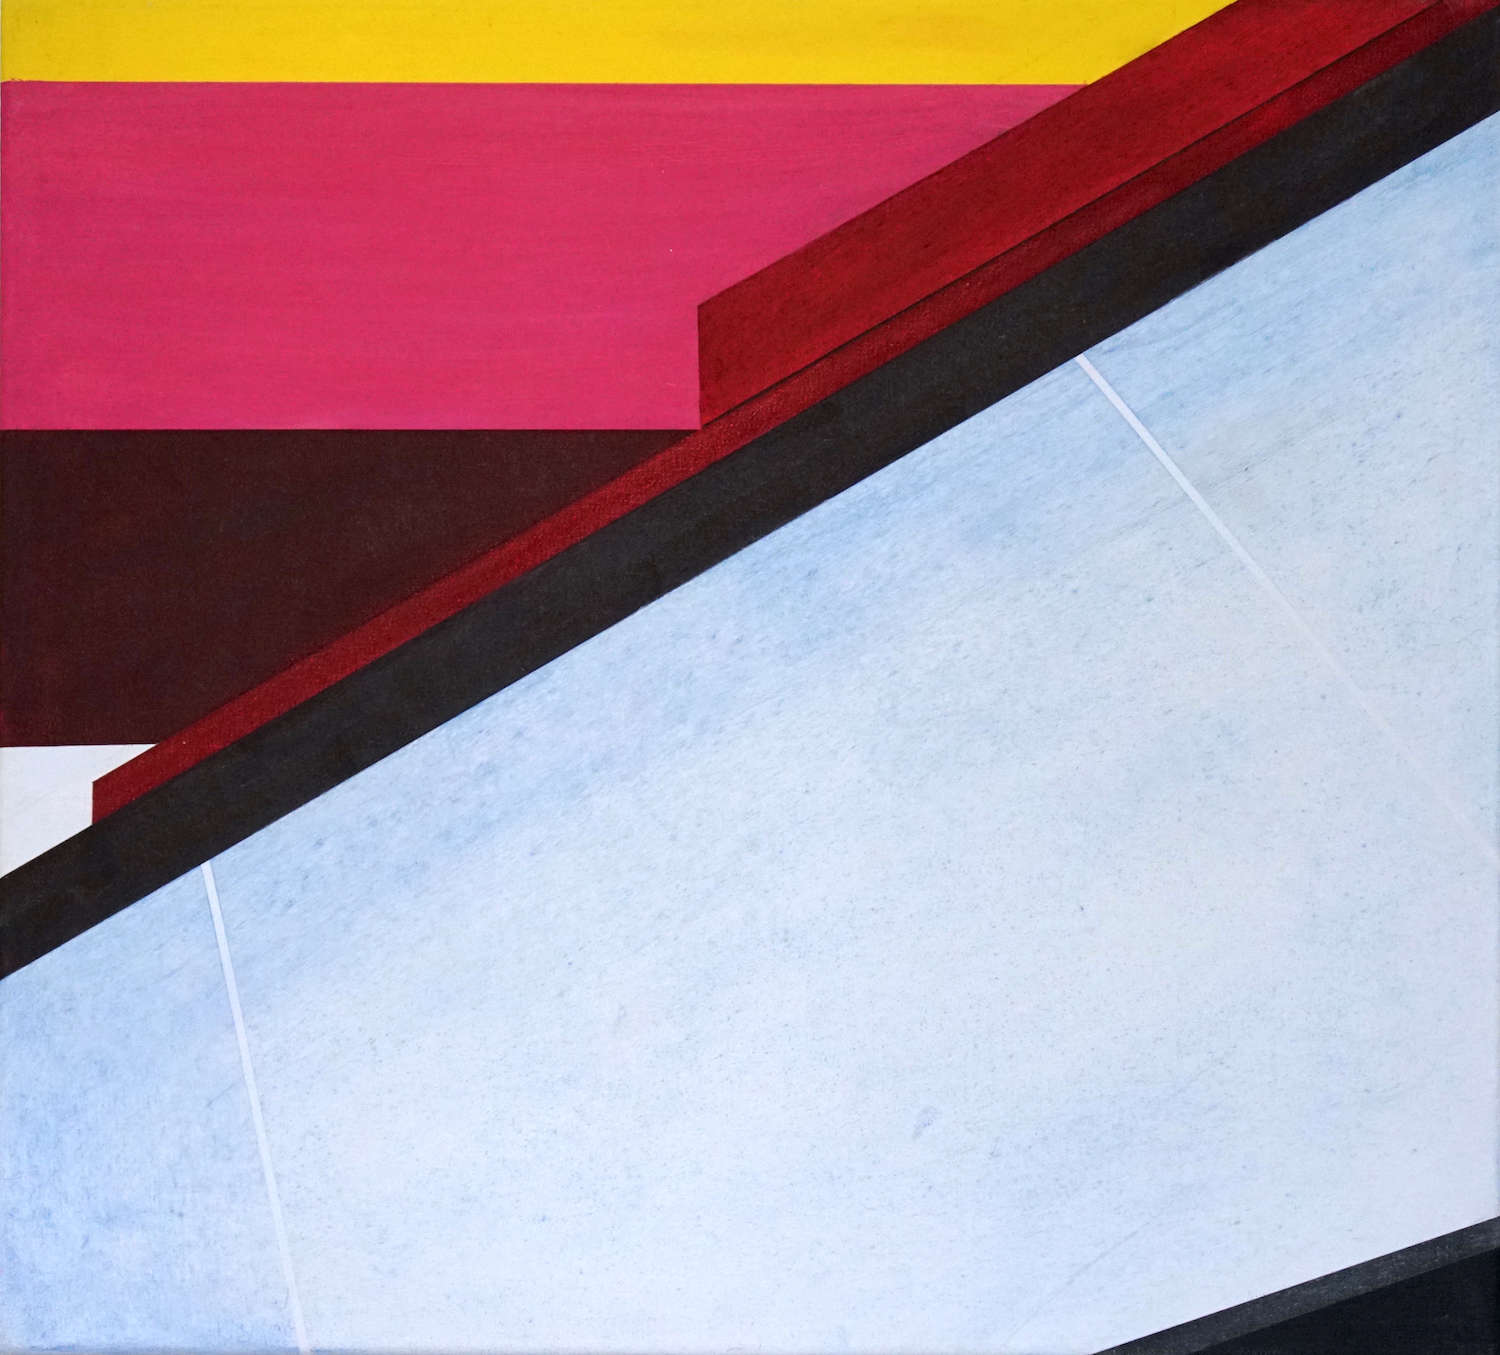 Tegel 13, 2020, 45 x 50 cm, Öl/Lw, Oil on Canvas